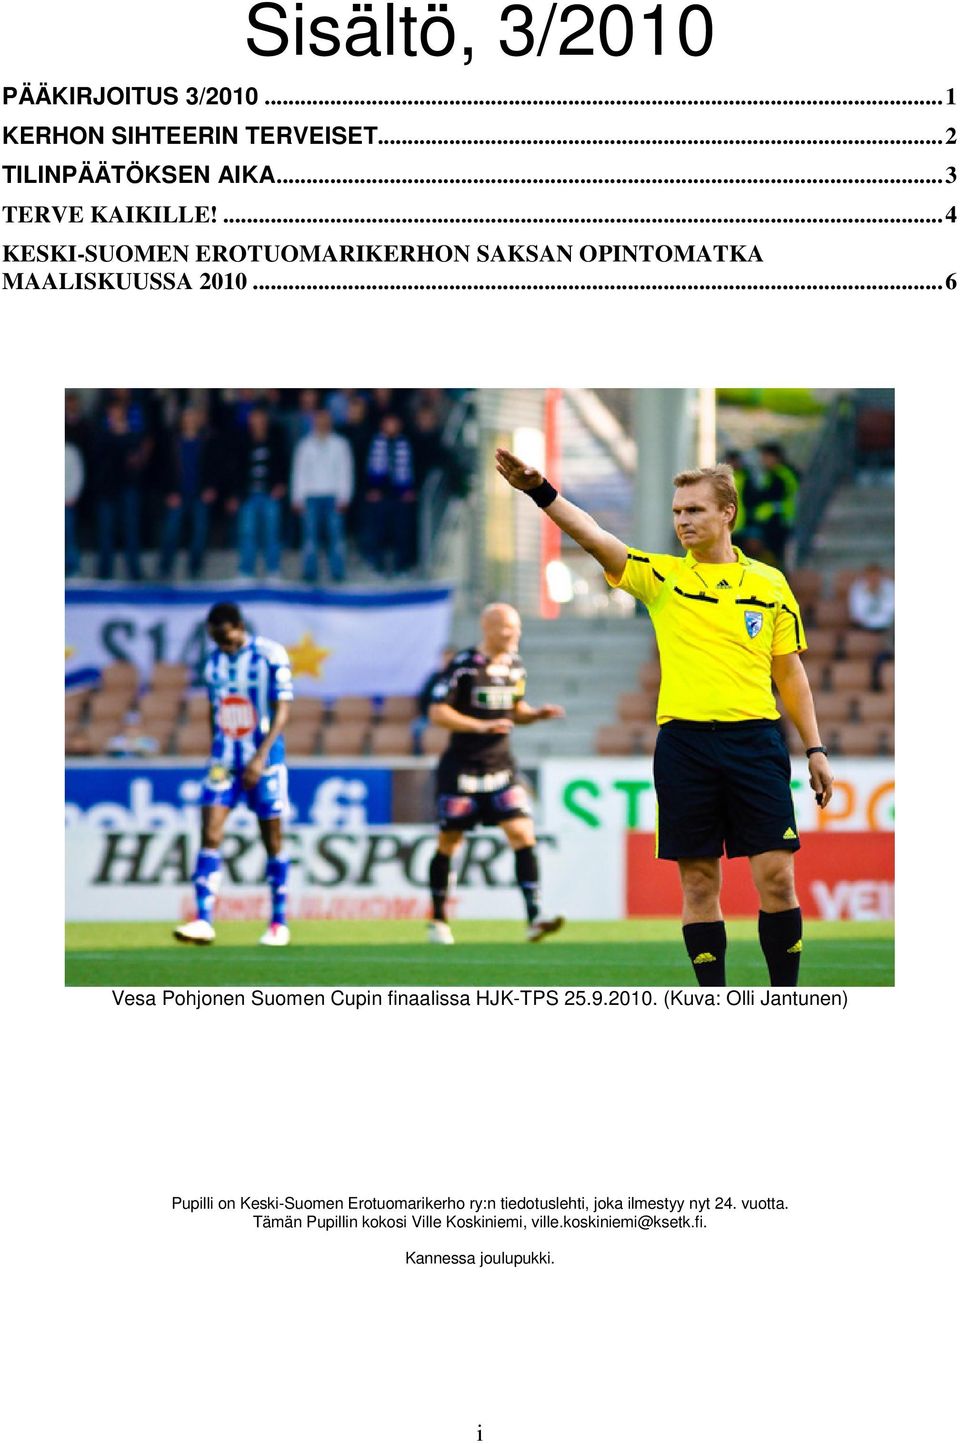 .. 6 Vesa Pohjonen Suomen Cupin finaalissa HJK-TPS 25.9.2010.